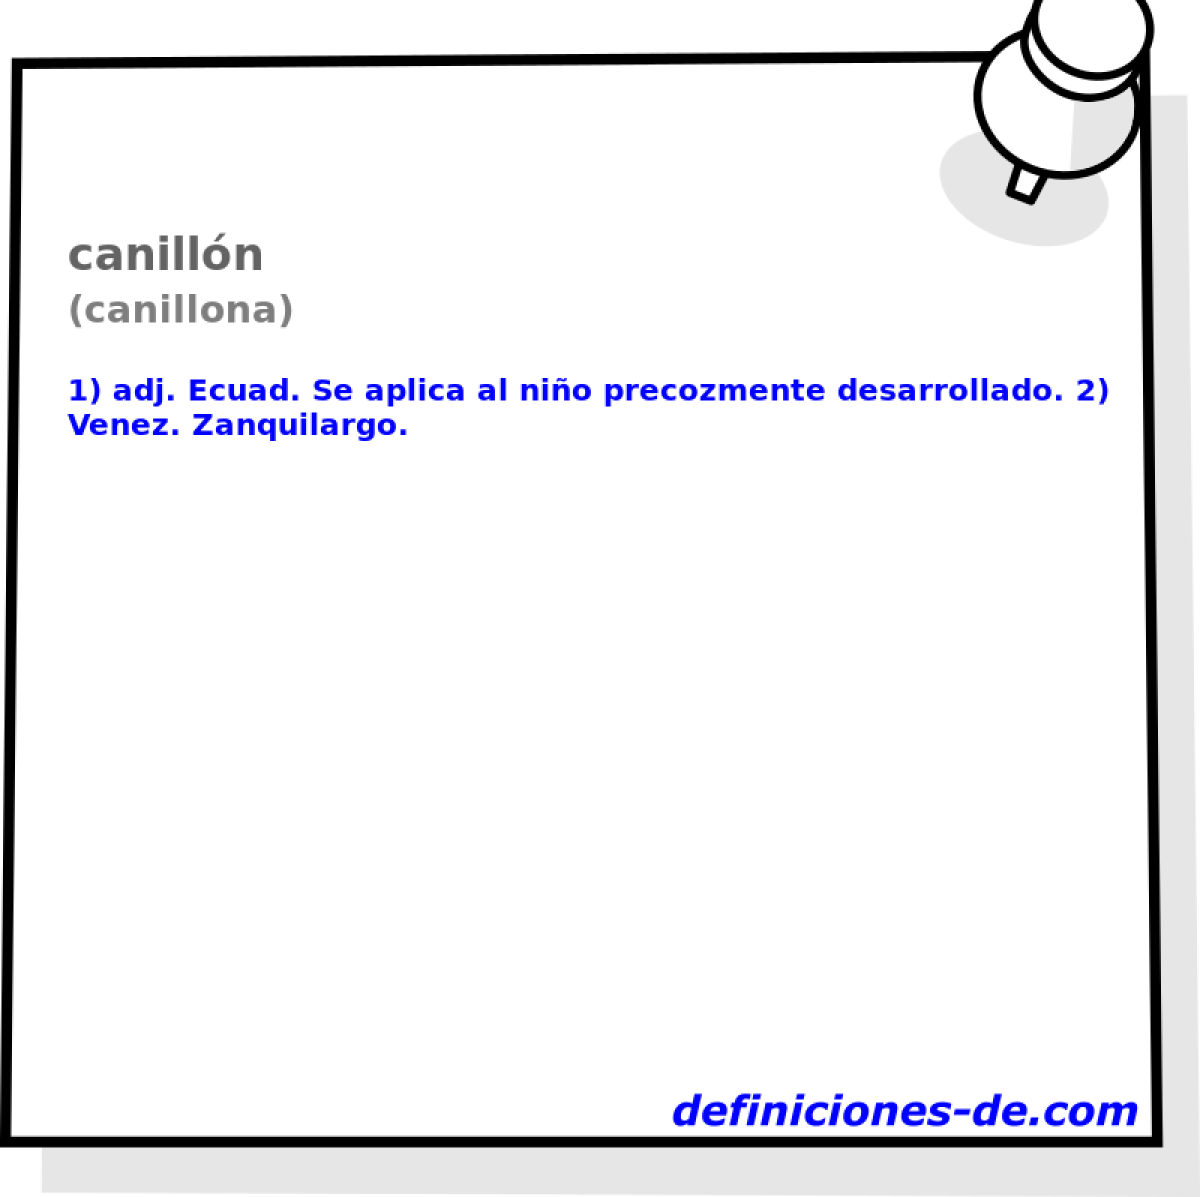 canilln (canillona)